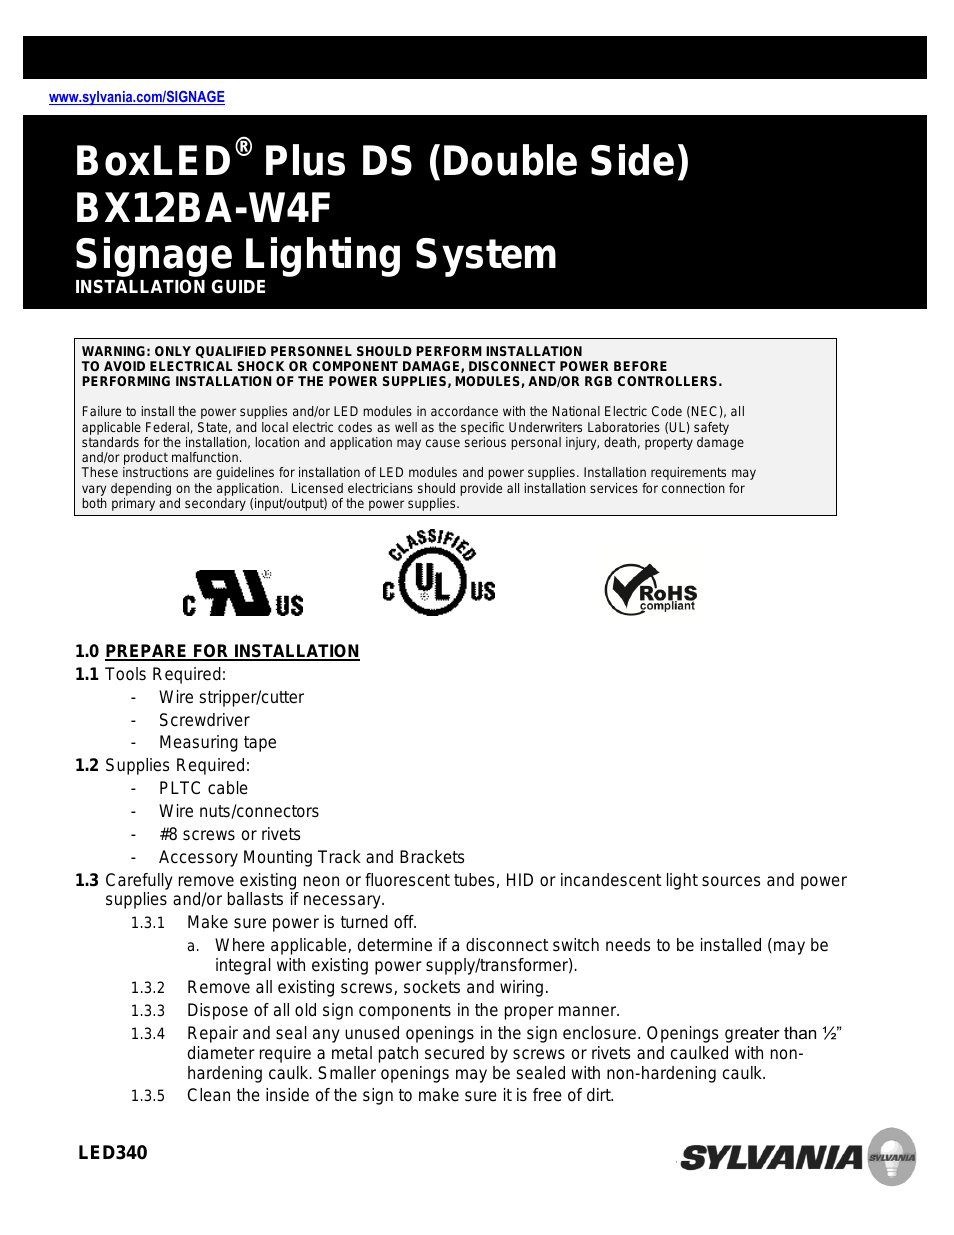 BoxLED Plus DS BX12BA-W4F